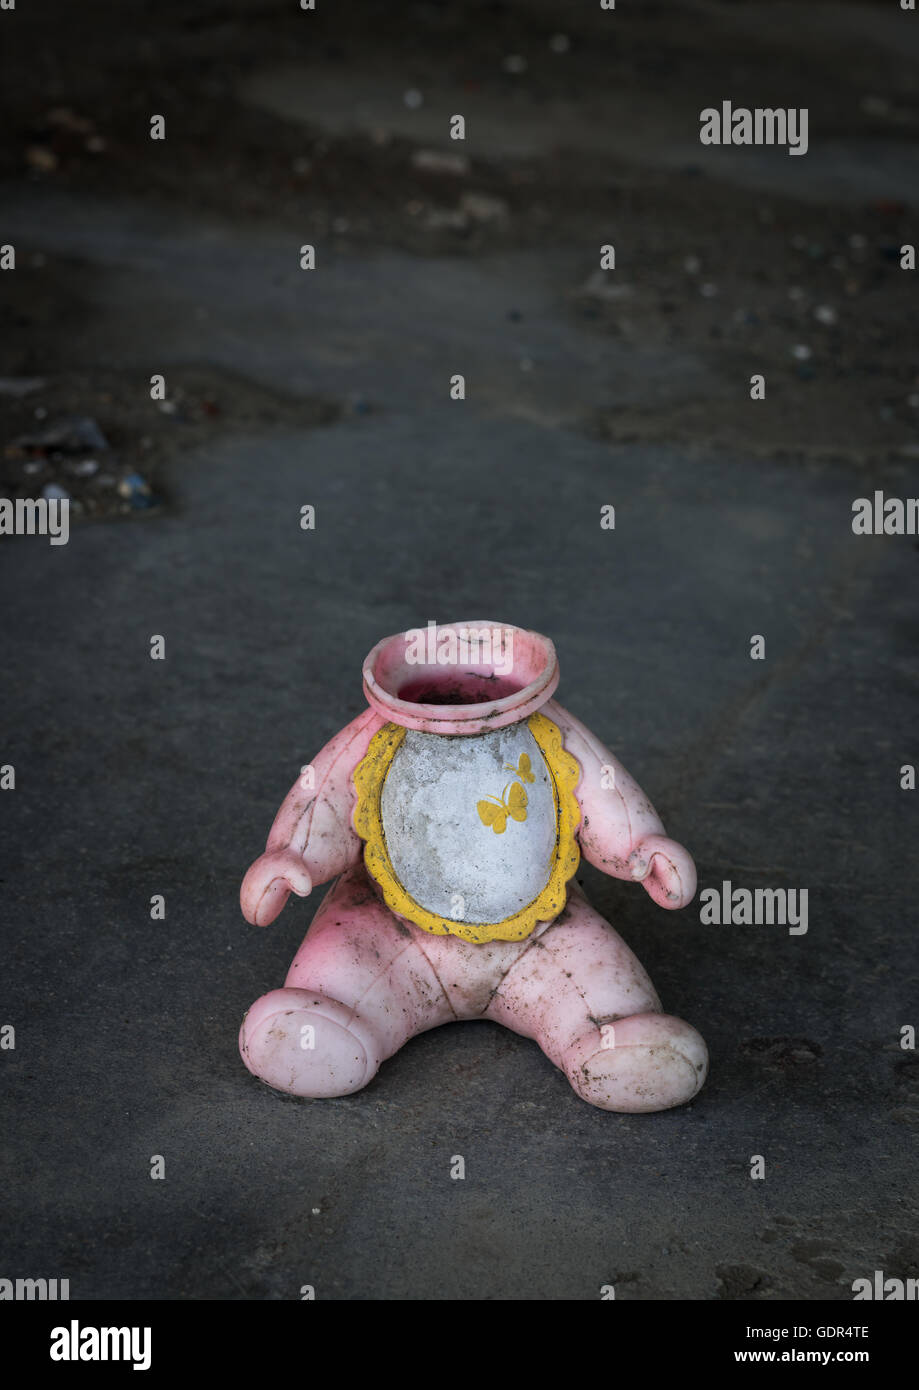 Eine Puppe ohne Kopf in einem Haus von 2011 Erdbeben und Tsunami zerstört, fünf Jahre später, Präfektur Fukushima, Namie, Japan Stockfoto